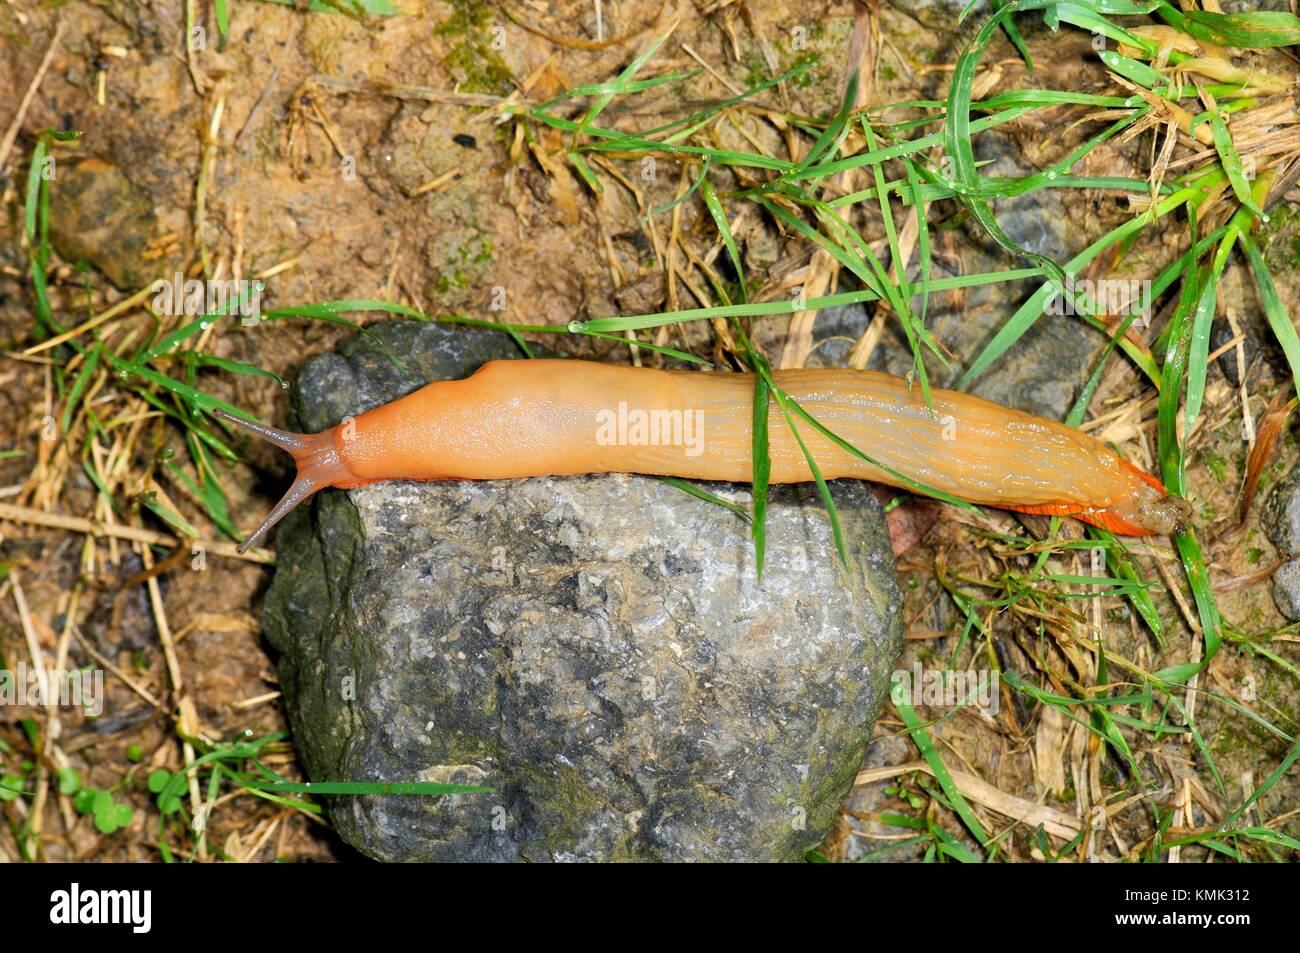 Slug, o tierras slug, es un nombre común para cualquier aparentemente  shell-less o molusco gasterópodo terrestre. El parque natural de Pagoeta.  Guipúzcoa. Comunidad Autónoma del País Vasco Fotografía de stock - Alamy